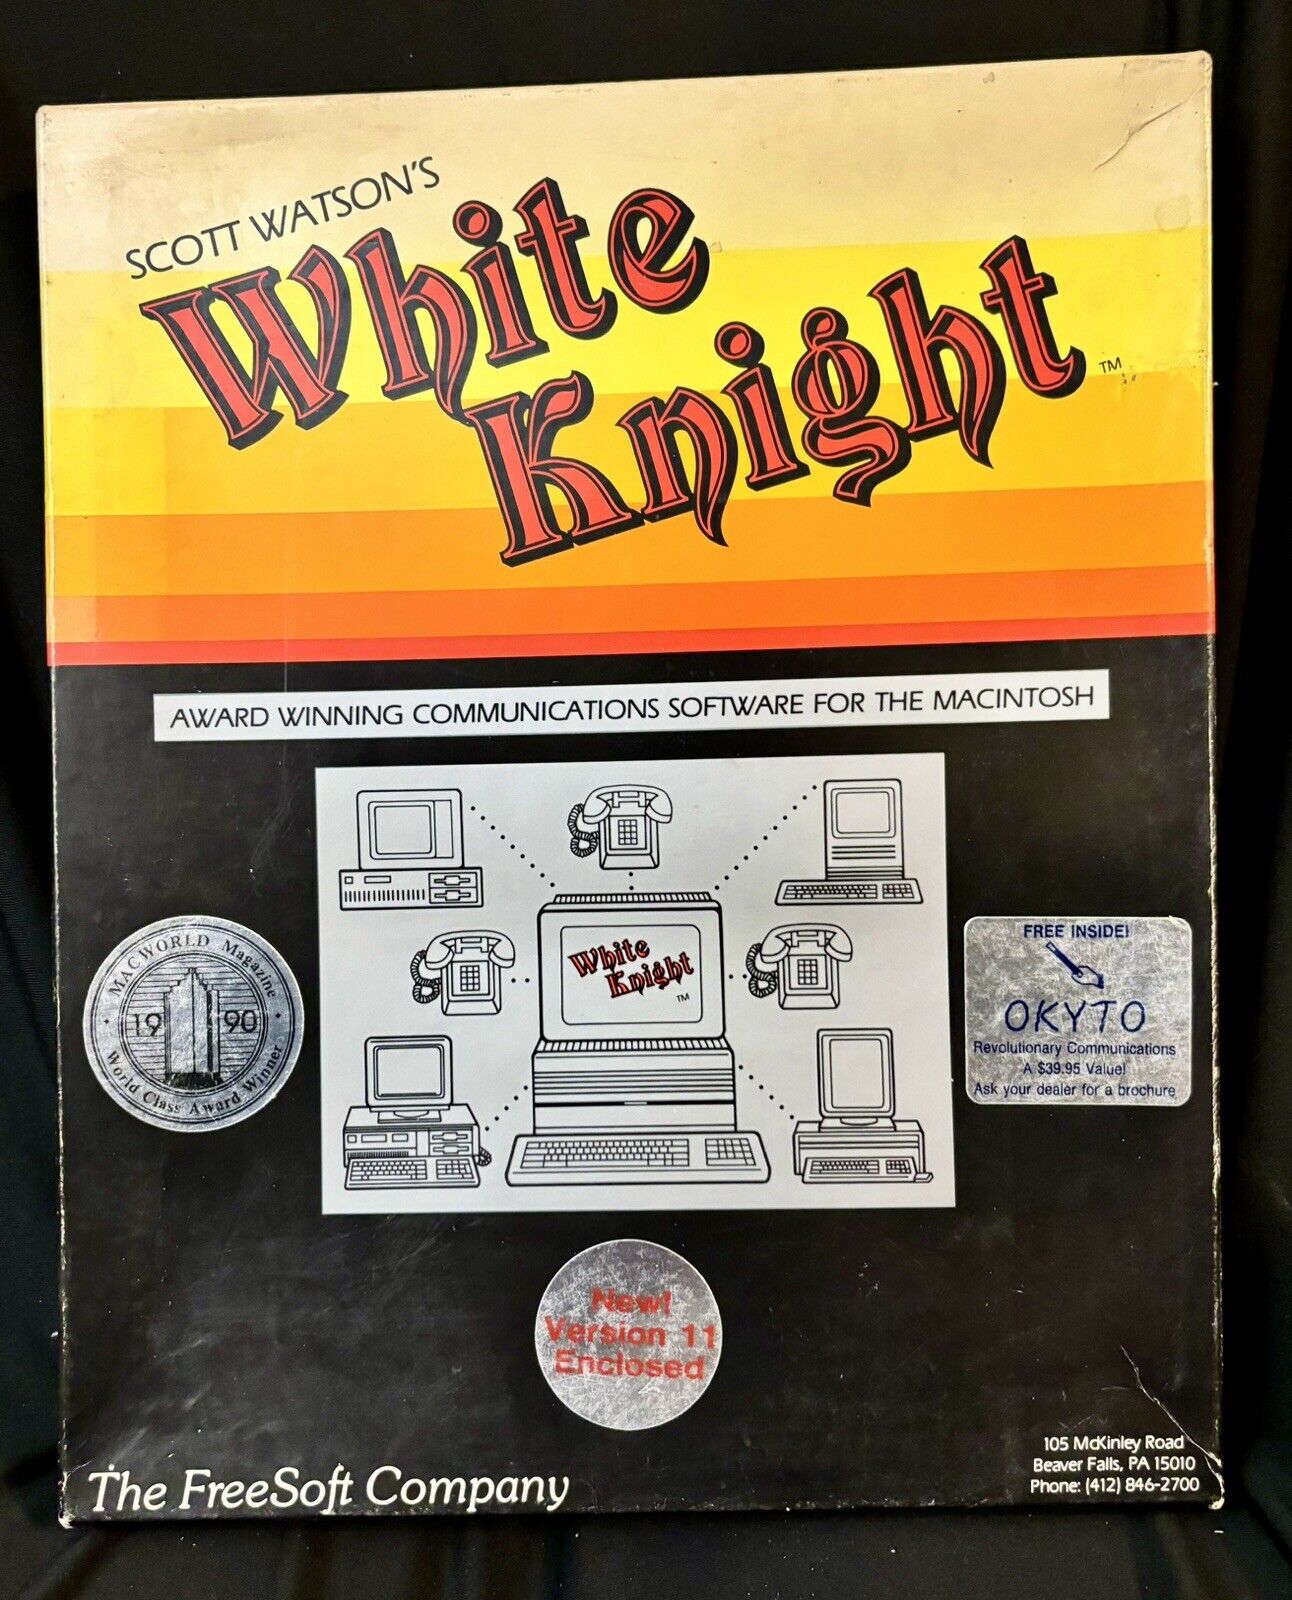 Scott Watson’s White Knight Communication Software - Apple/Macintosh 